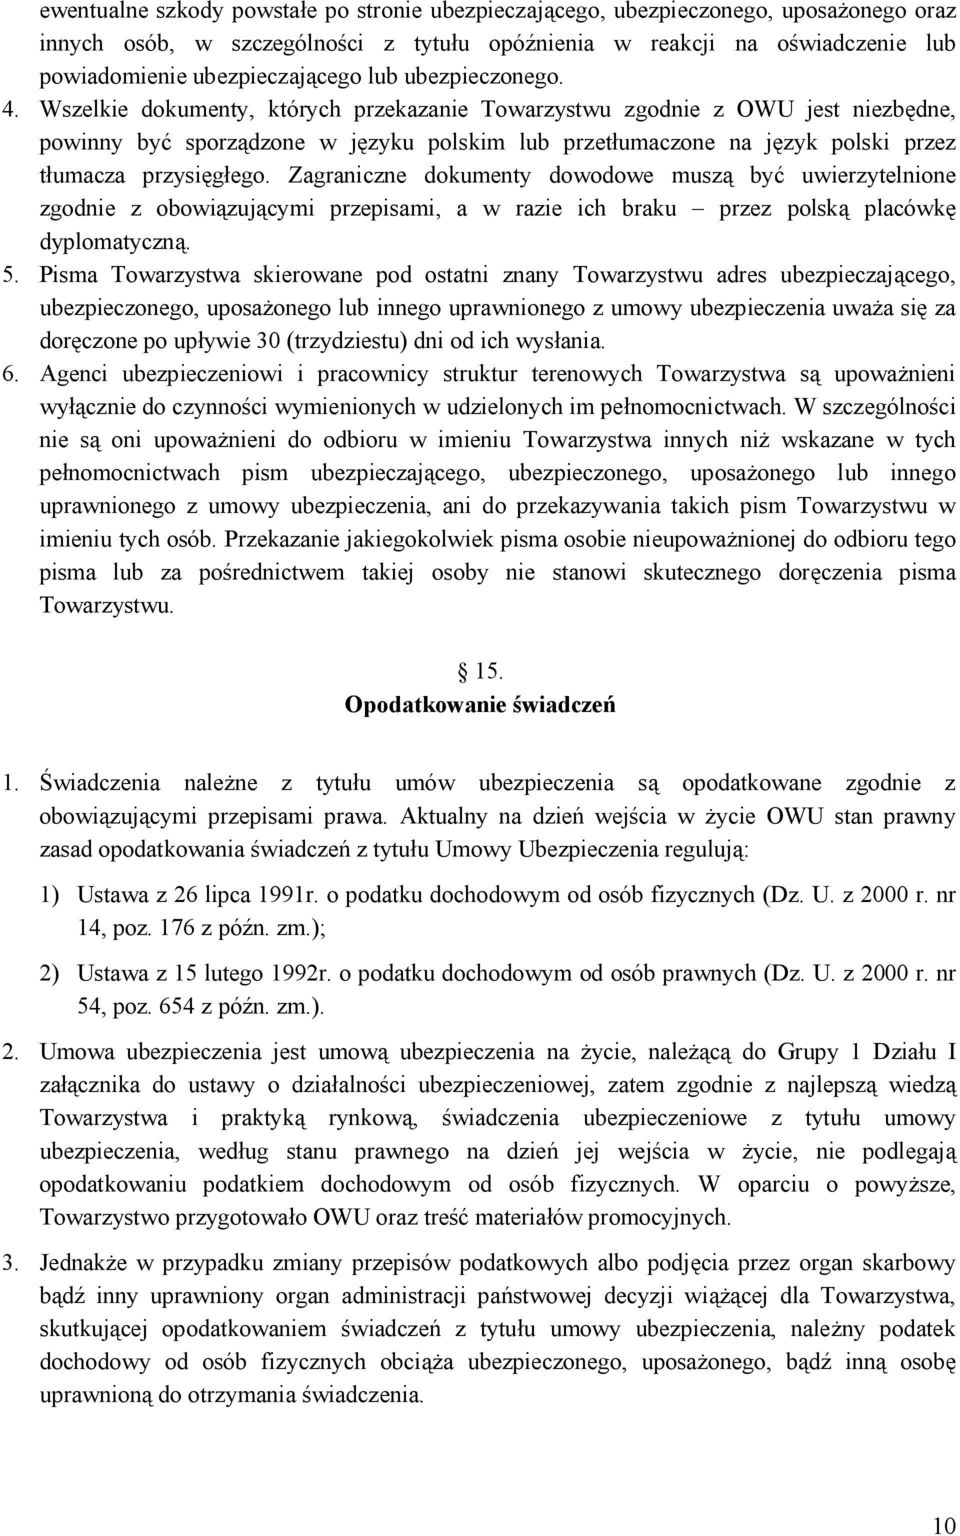 Wszelkie dokumenty, których przekazanie Towarzystwu zgodnie z OWU jest niezbędne, powinny być sporządzone w języku polskim lub przetłumaczone na język polski przez tłumacza przysięgłego.